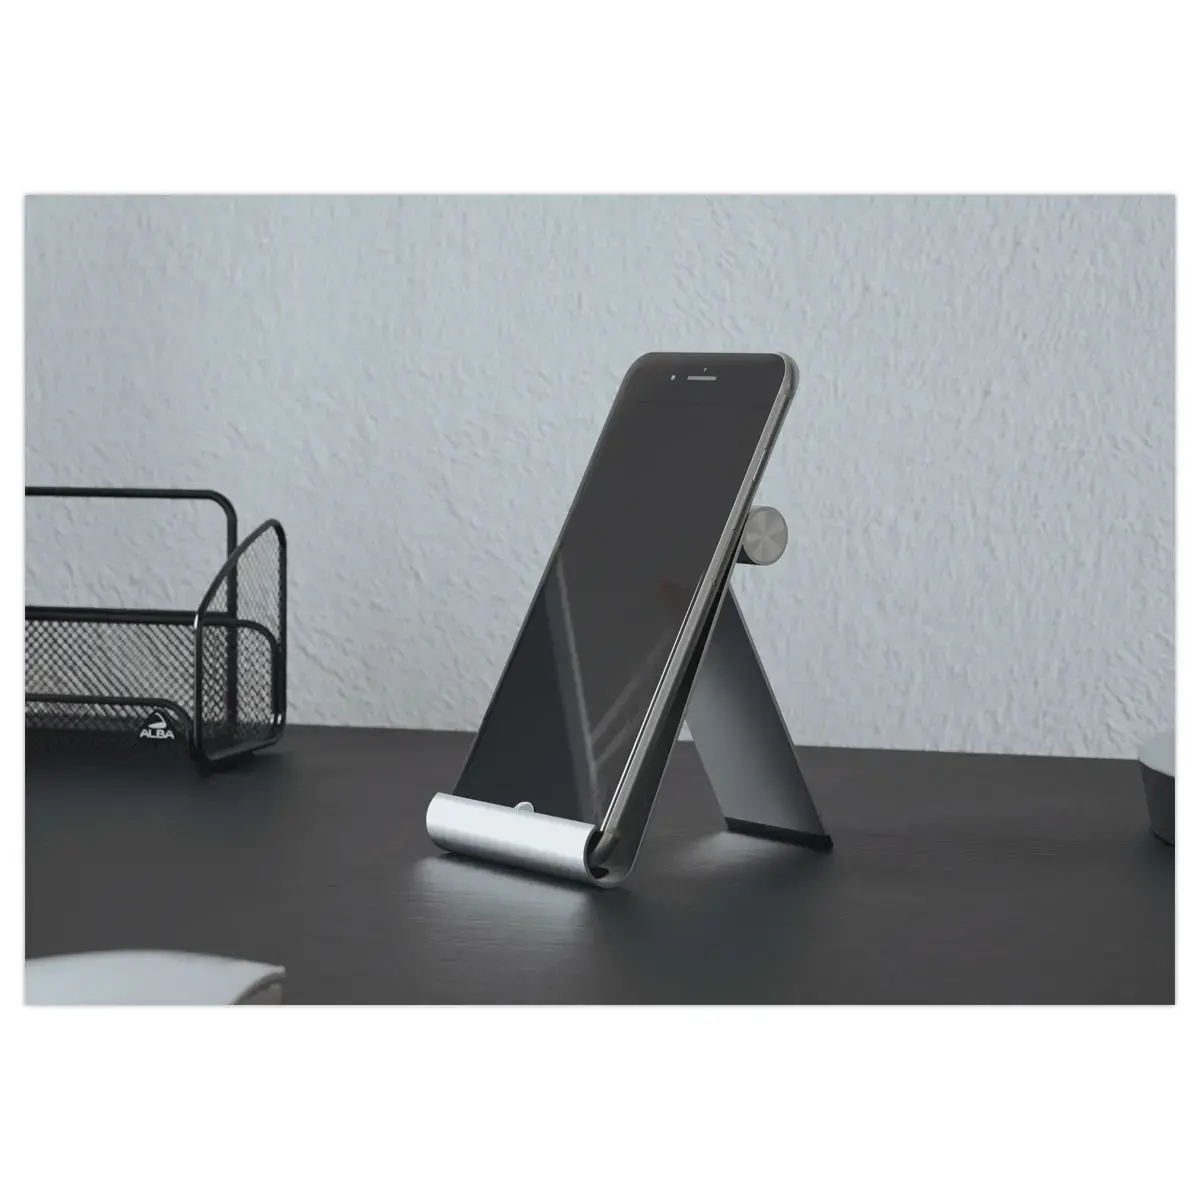 Support ergonomique pour téléphone et tablette photo du produit